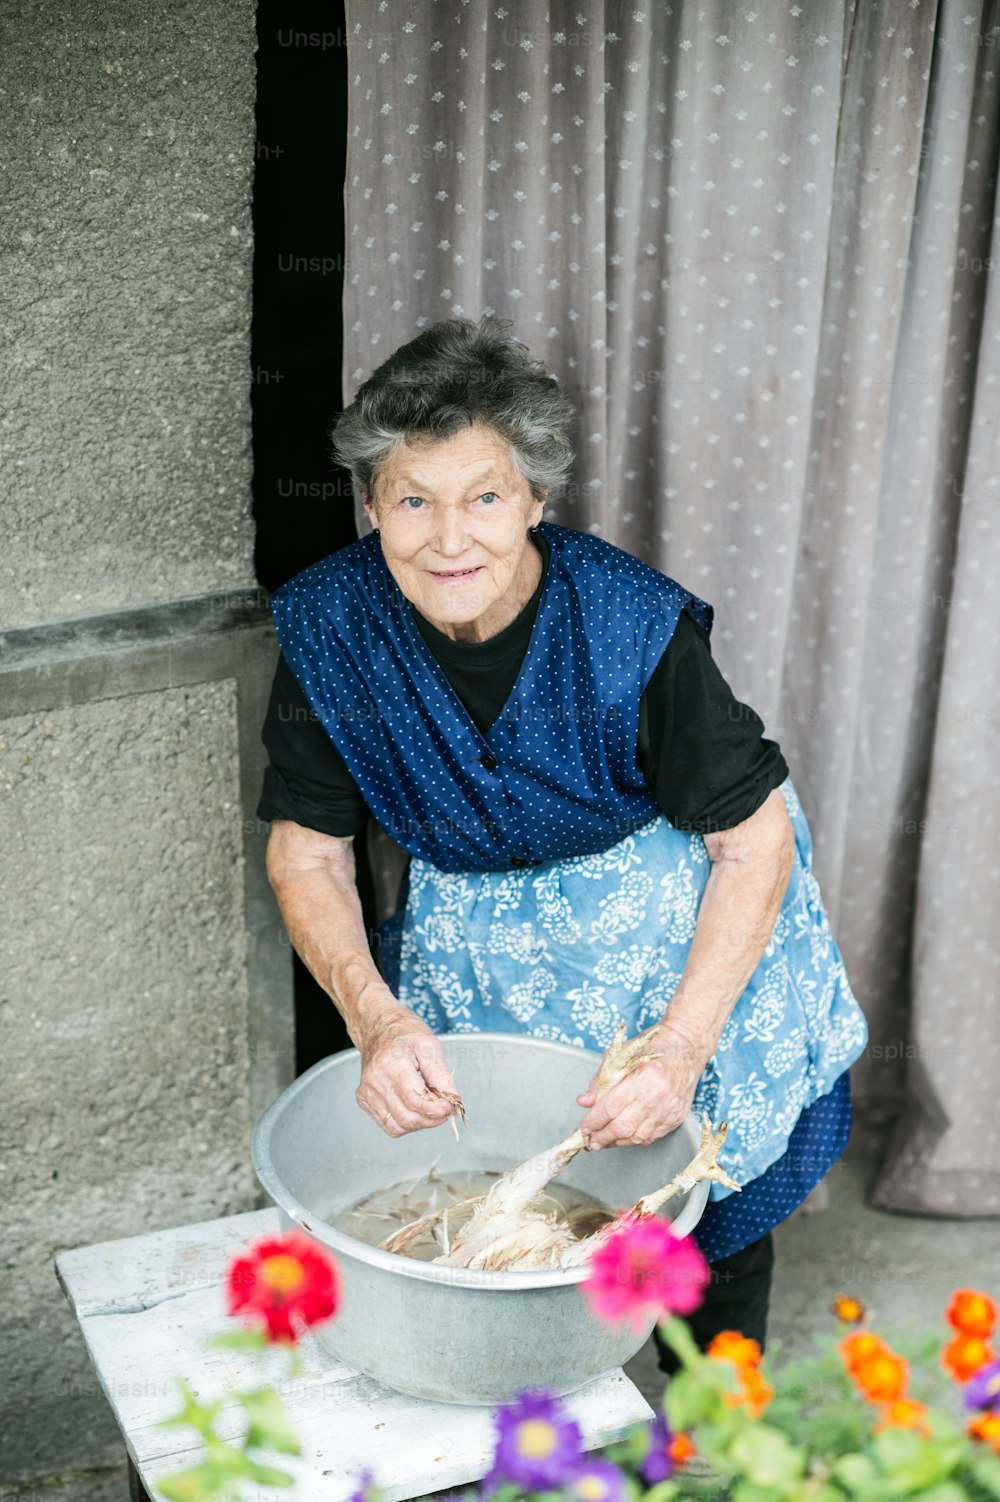 Mulher idosa limpando e lavando frango recém-abatido do lado de fora na frente de sua casa.